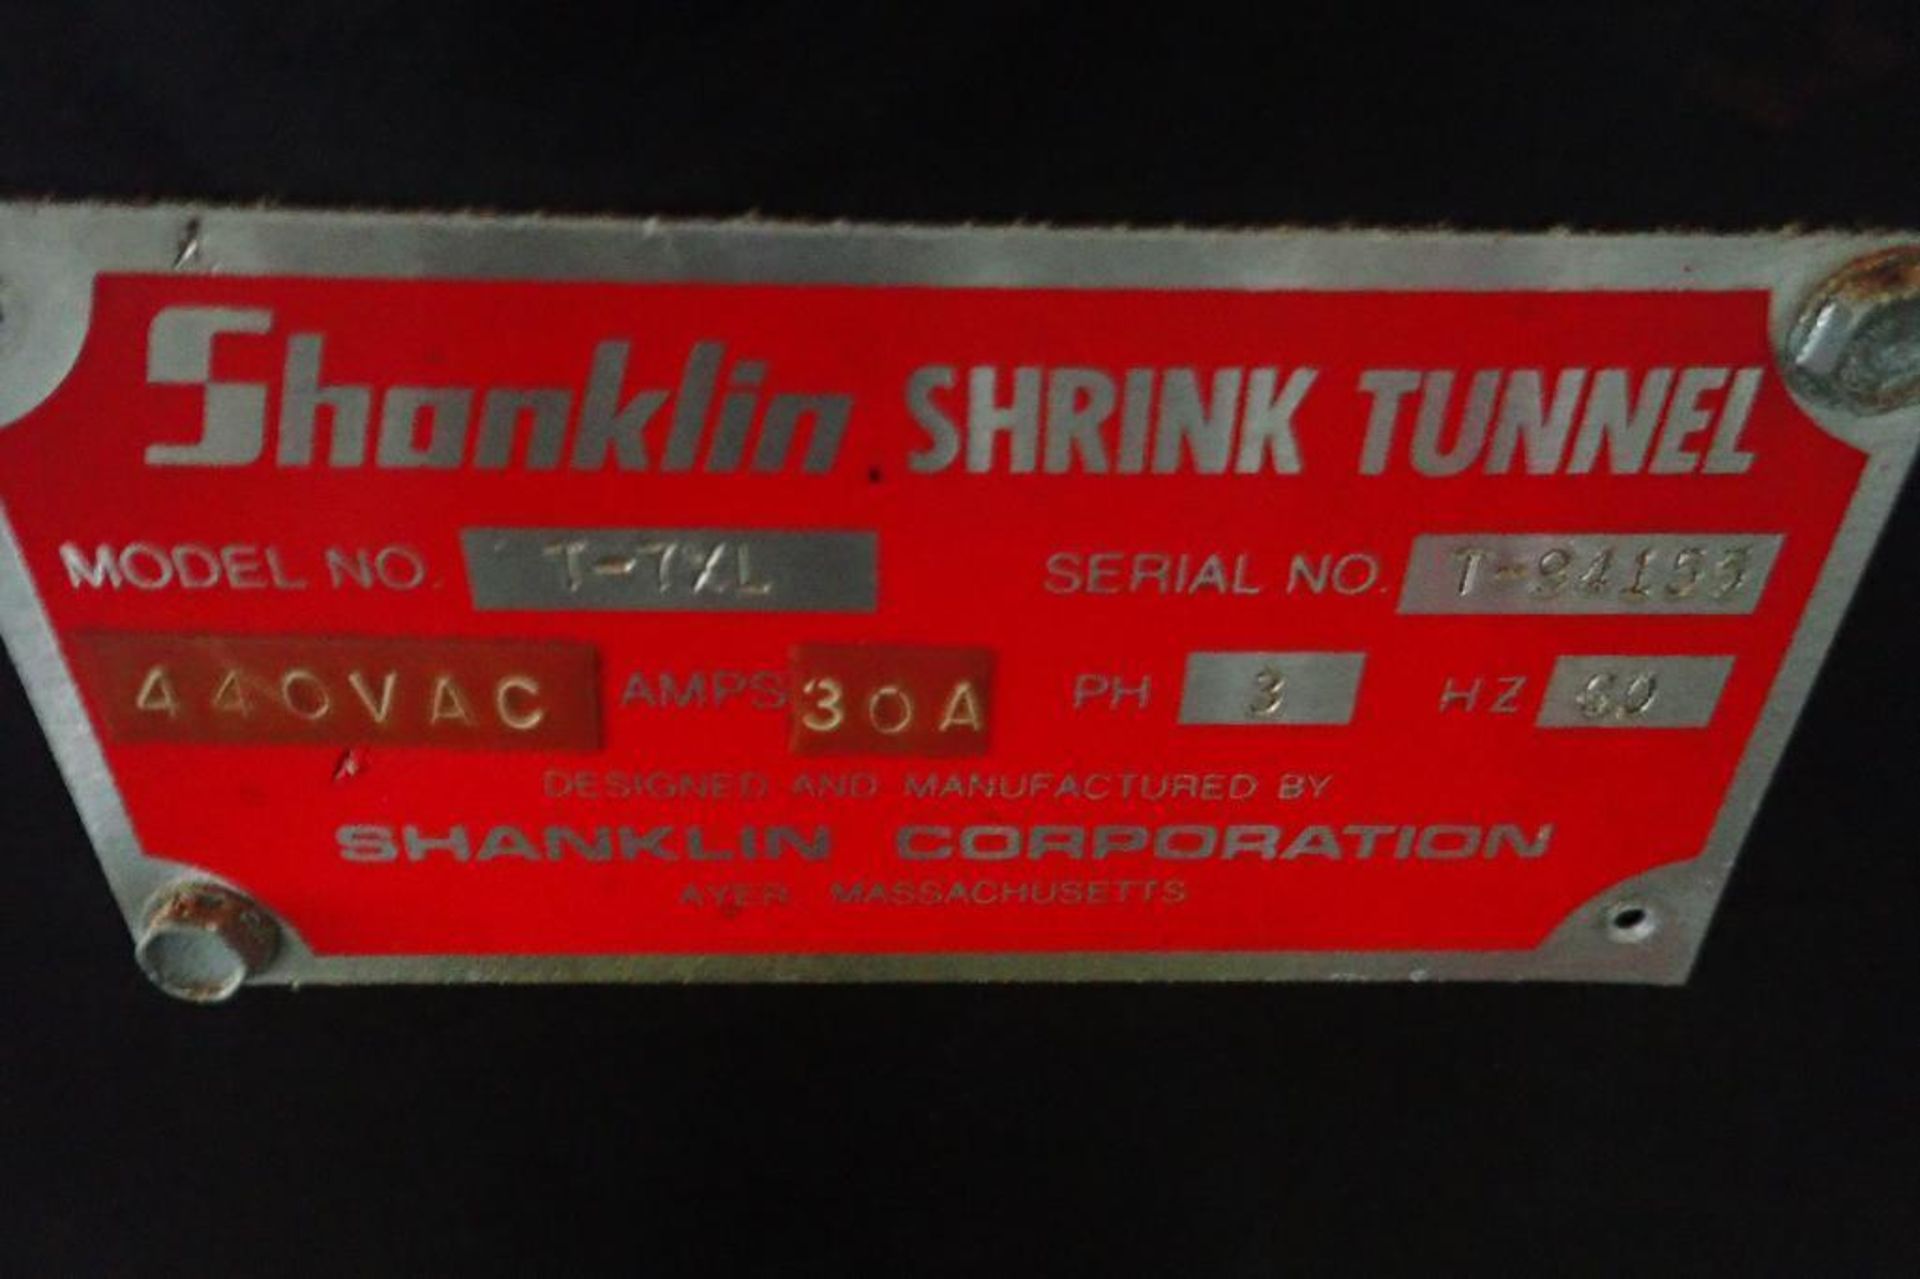 Shanklin heat tunnel, Model T-7XL, SN: T-94155, 15 in. wide belt, 20 in. wide x 12 in. tall, 42 in. - Image 5 of 6